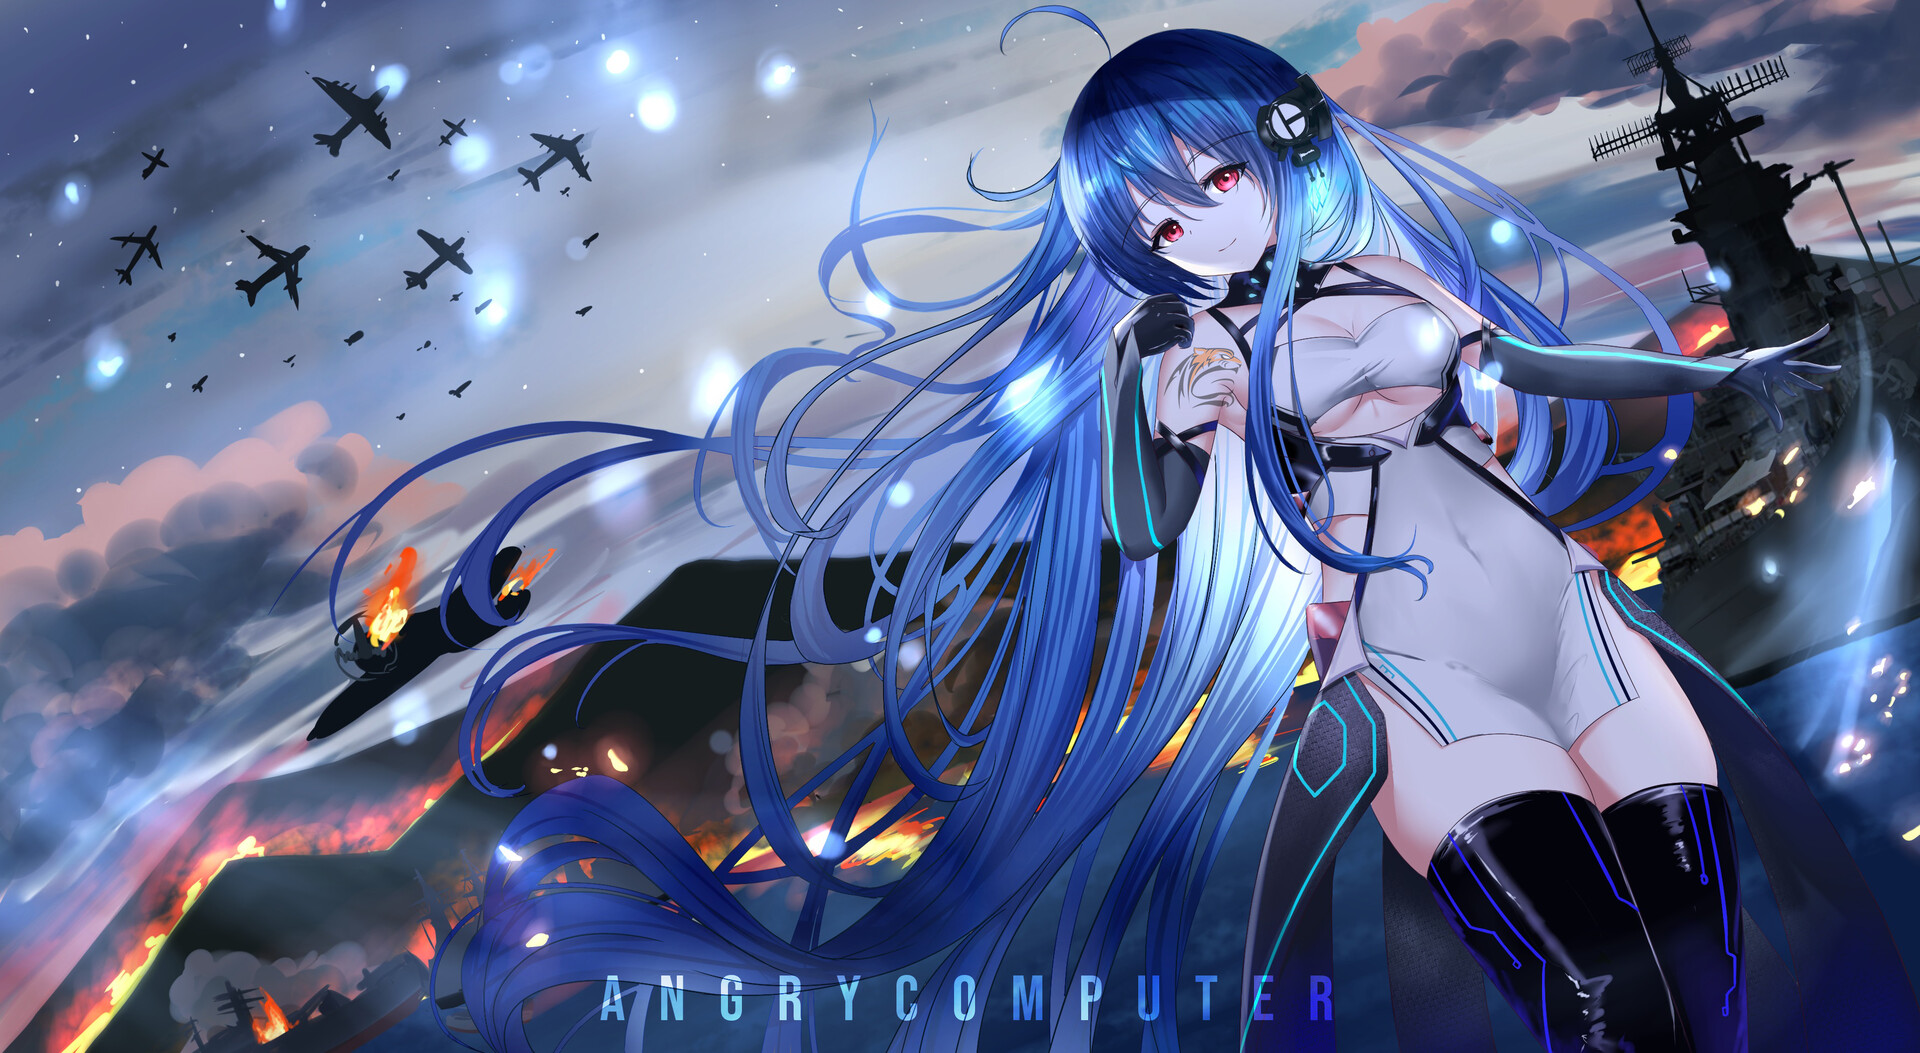 ArtStation - Blue haired anime girl